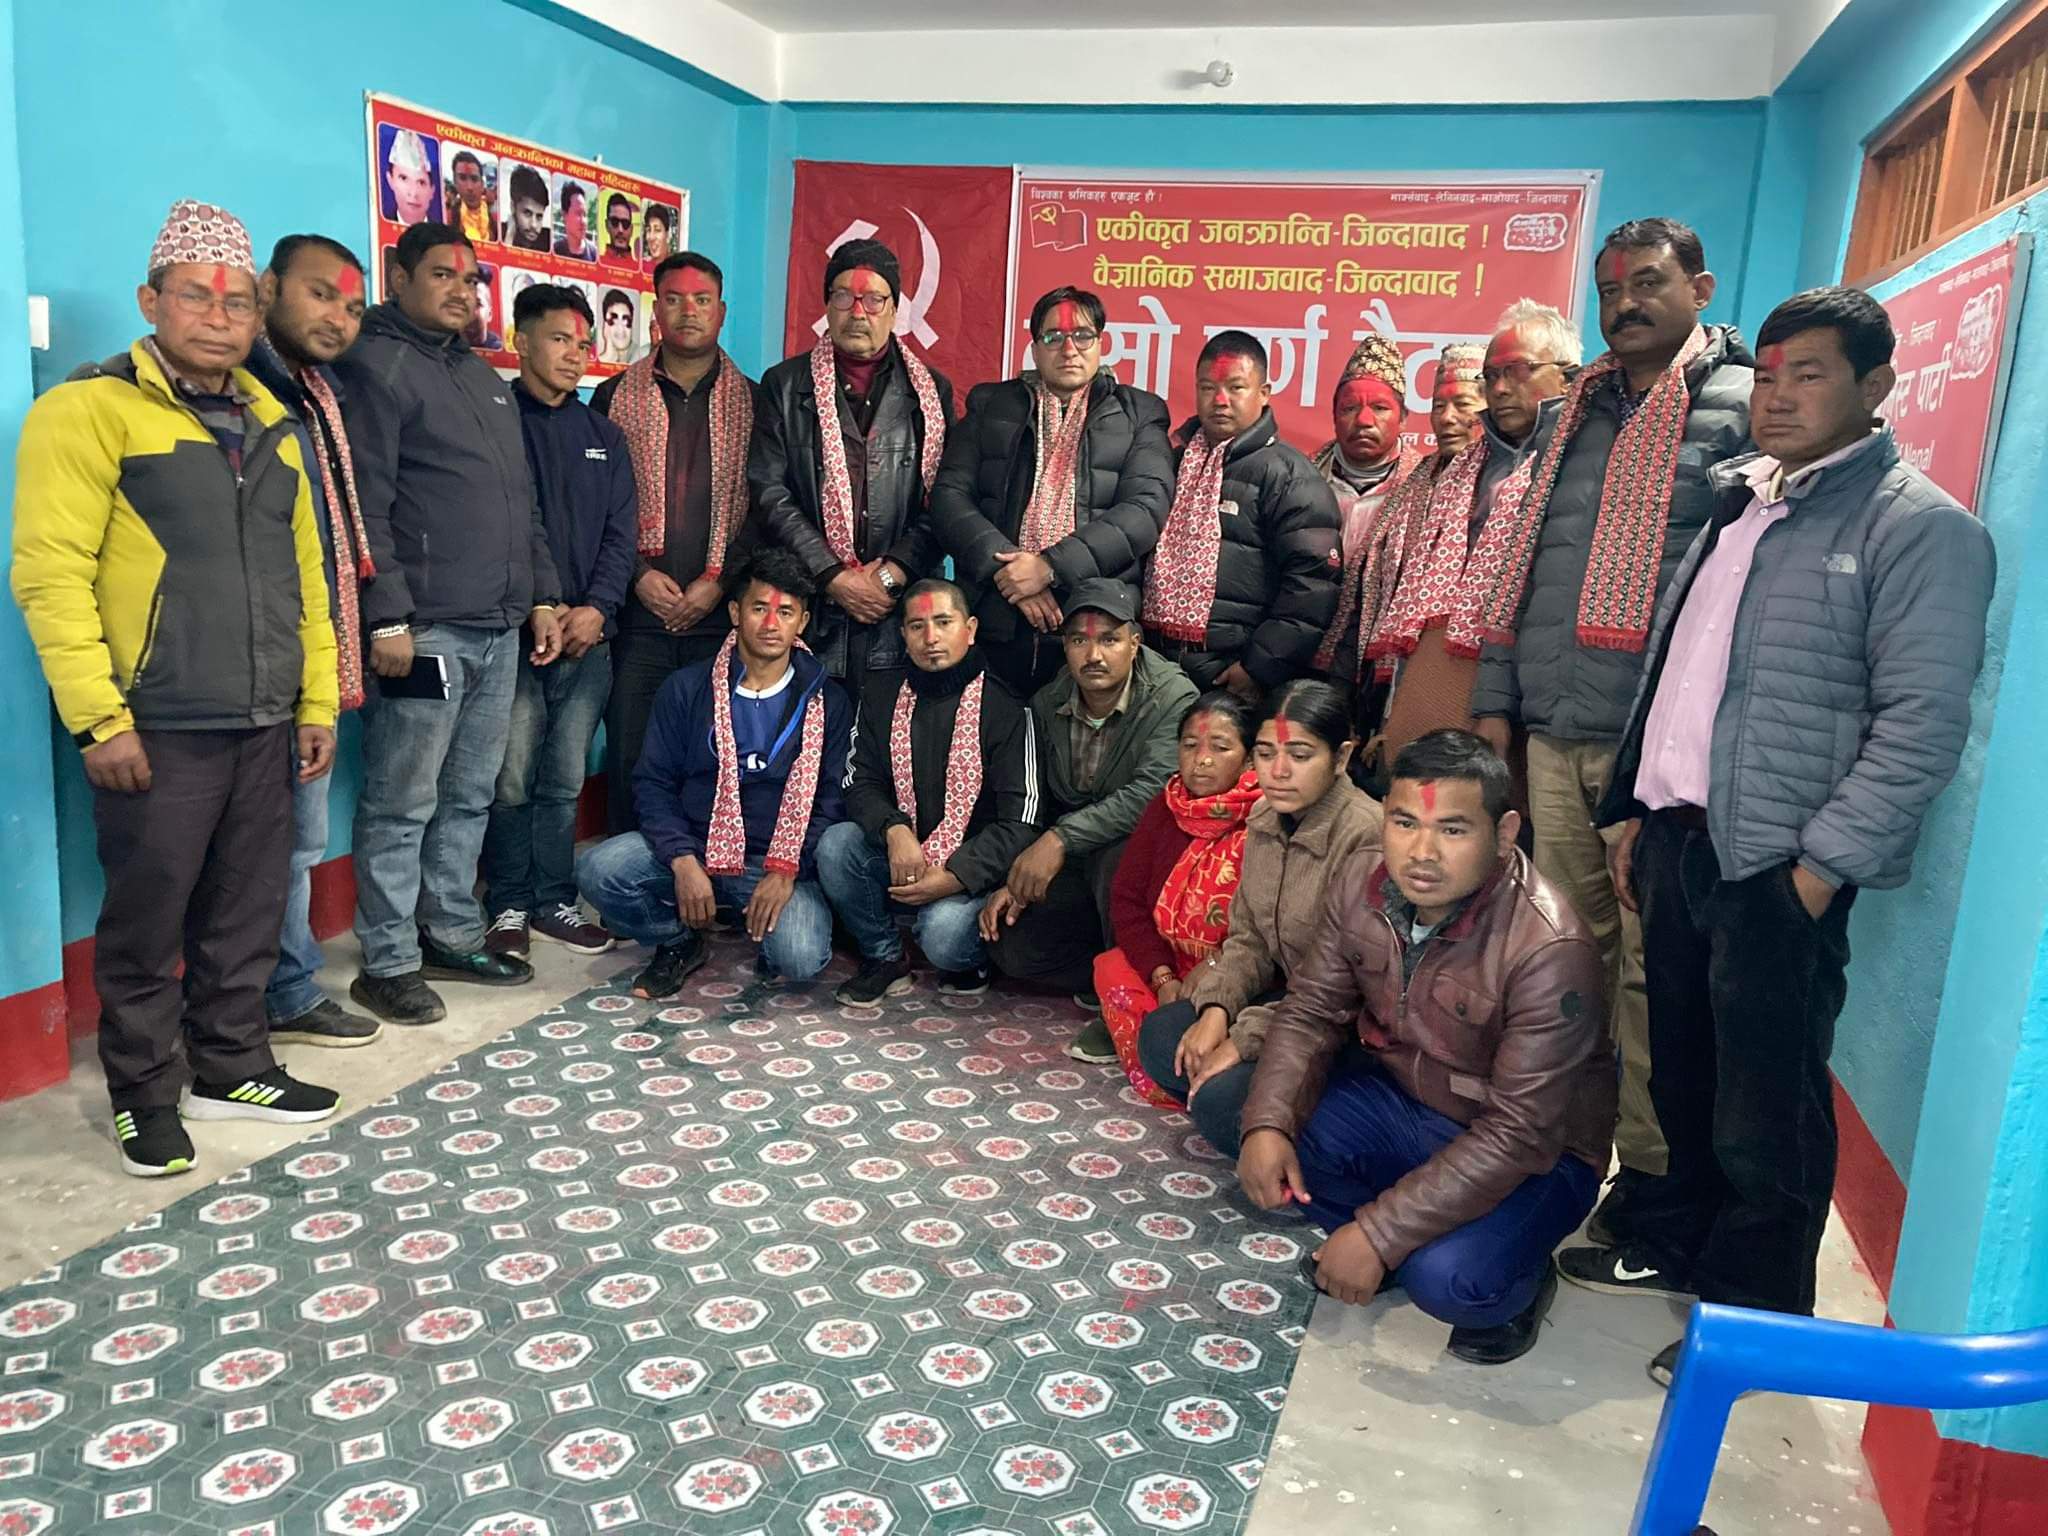 नेपाल कम्युनिस्ट पार्टी दोलखाको दोस्रो पूर्ण बैठक सम्पन्न, महाधिवेशनबाट निर्वाचित नेताहरूलाई सम्मान